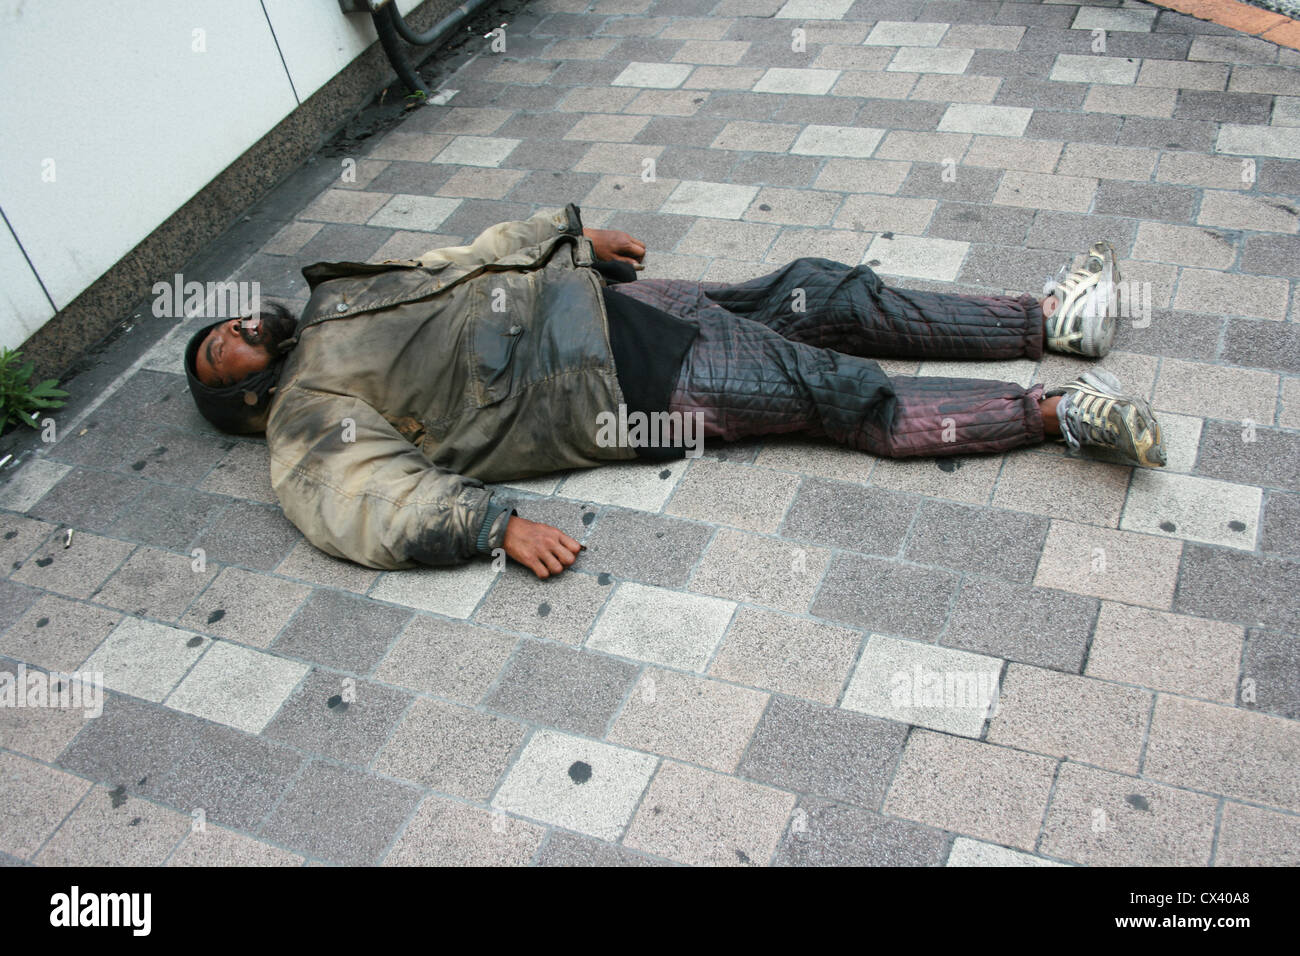 Un senzatetto giacente in stato di incoscienza in strada. Foto Stock